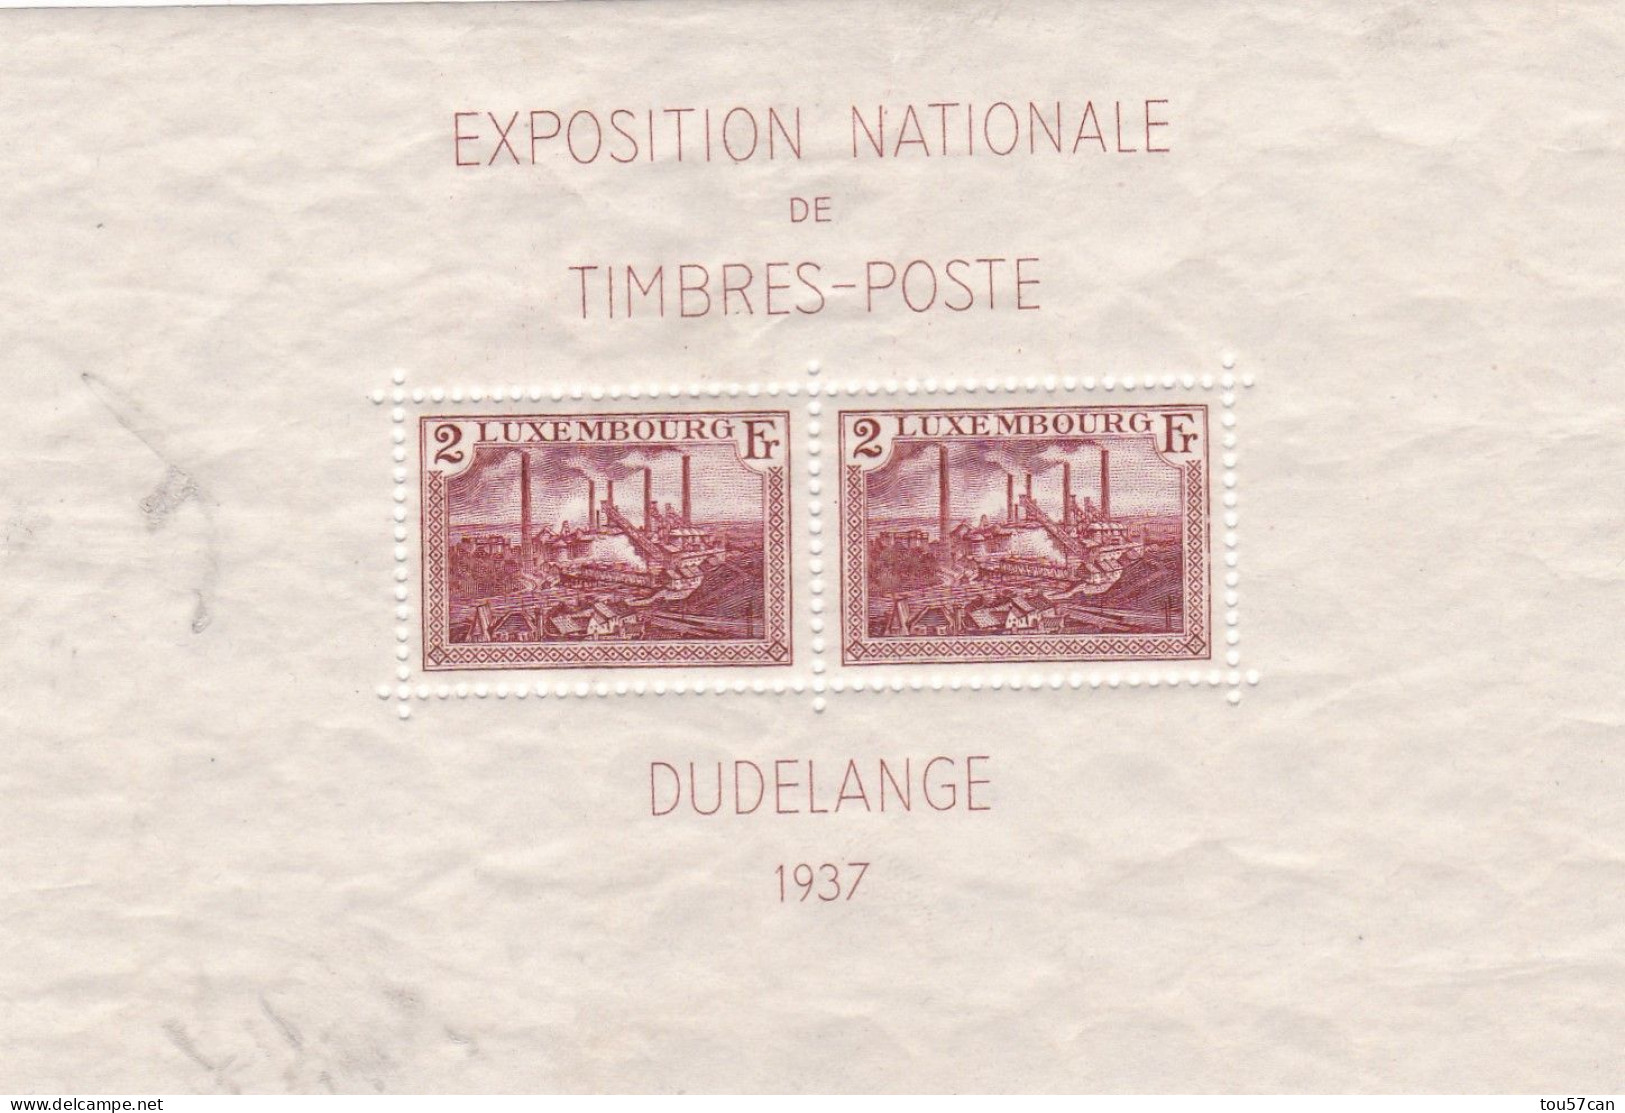 GRAND DUCHE DE LUXEMBOURG - BLOC DE 2 TIMBRES - DUDELANGE 1937 - EXPOSITION NATIONALE DE TIMBRES-POSTE. - Blocs & Feuillets